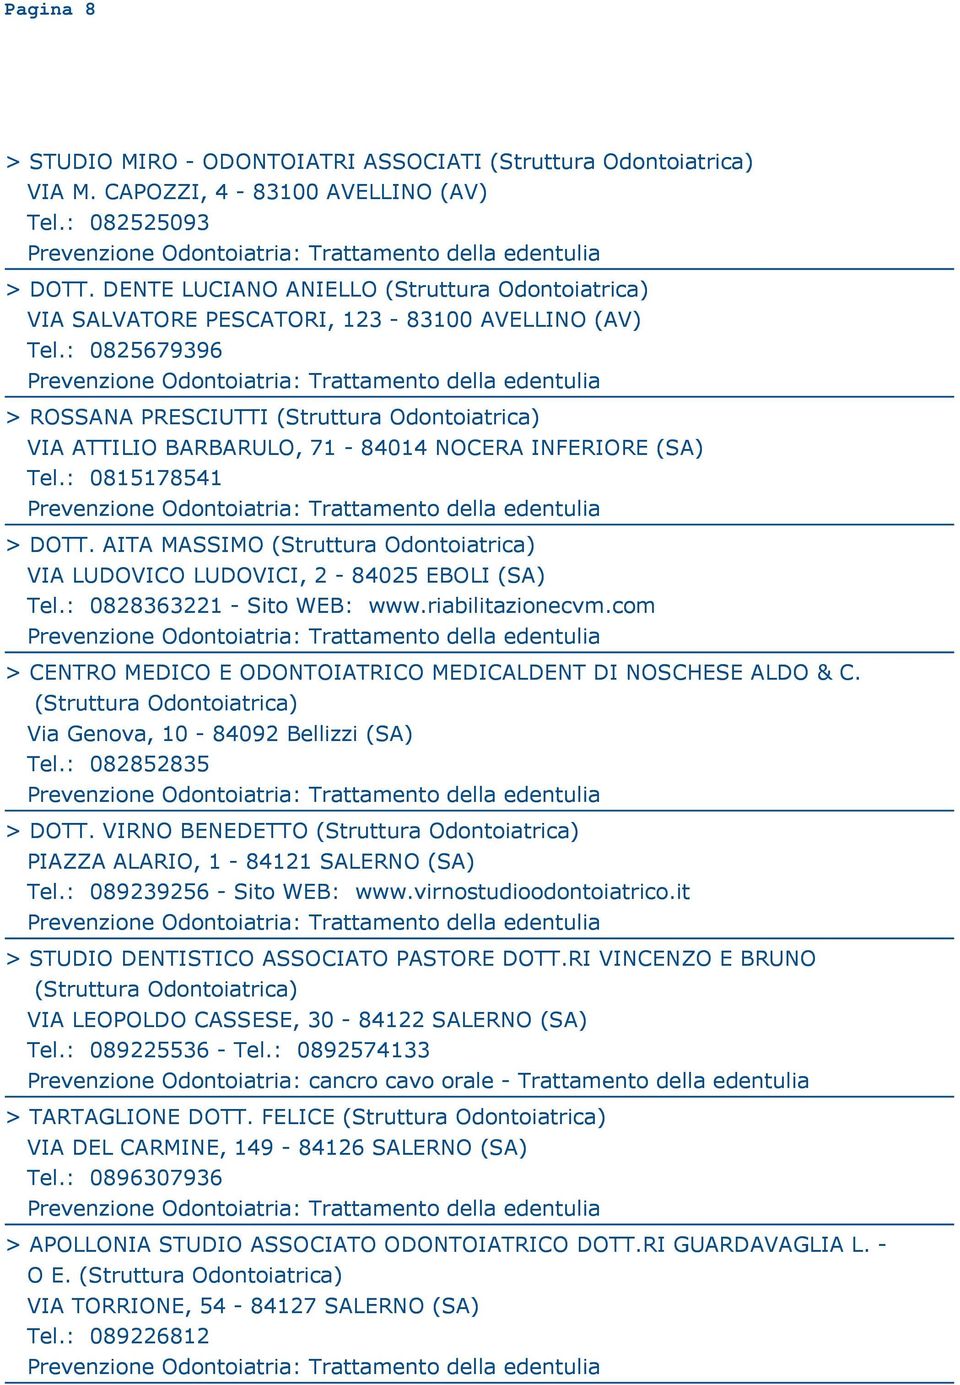 : 0828363221 - Sito WEB: www.riabilitazionecvm.com > CENTRO MEDICO E ODONTOIATRICO MEDICALDENT DI NOSCHESE ALDO & C. Via Genova, 10-84092 Bellizzi (SA) Tel.: 082852835 > DOTT.